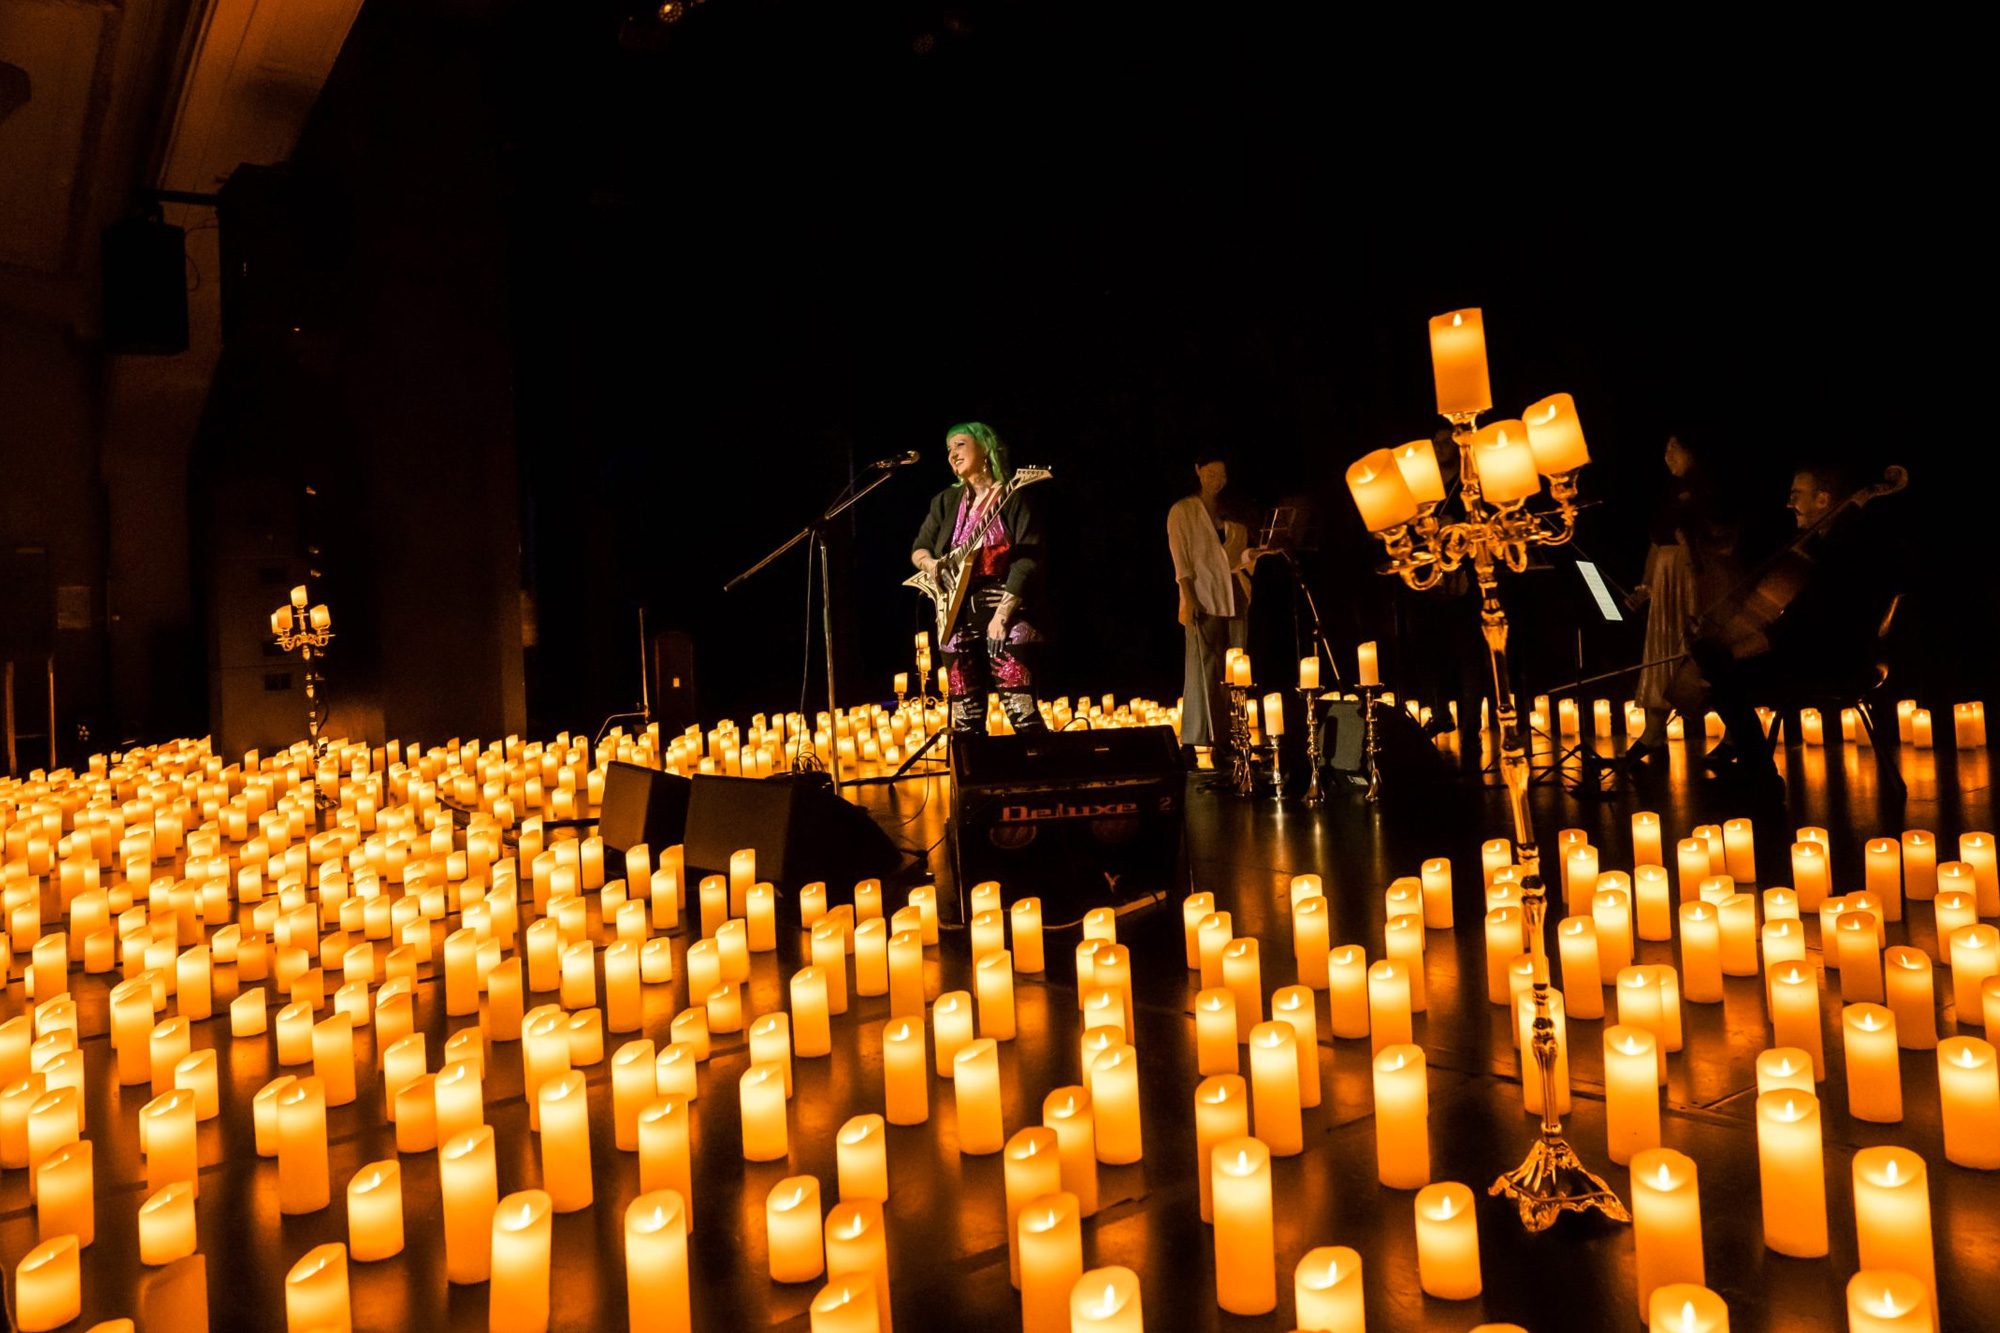 Candlelight, concerto in Villa Moroni: Tributo ai Coldplay. Una band suona circondata da candele